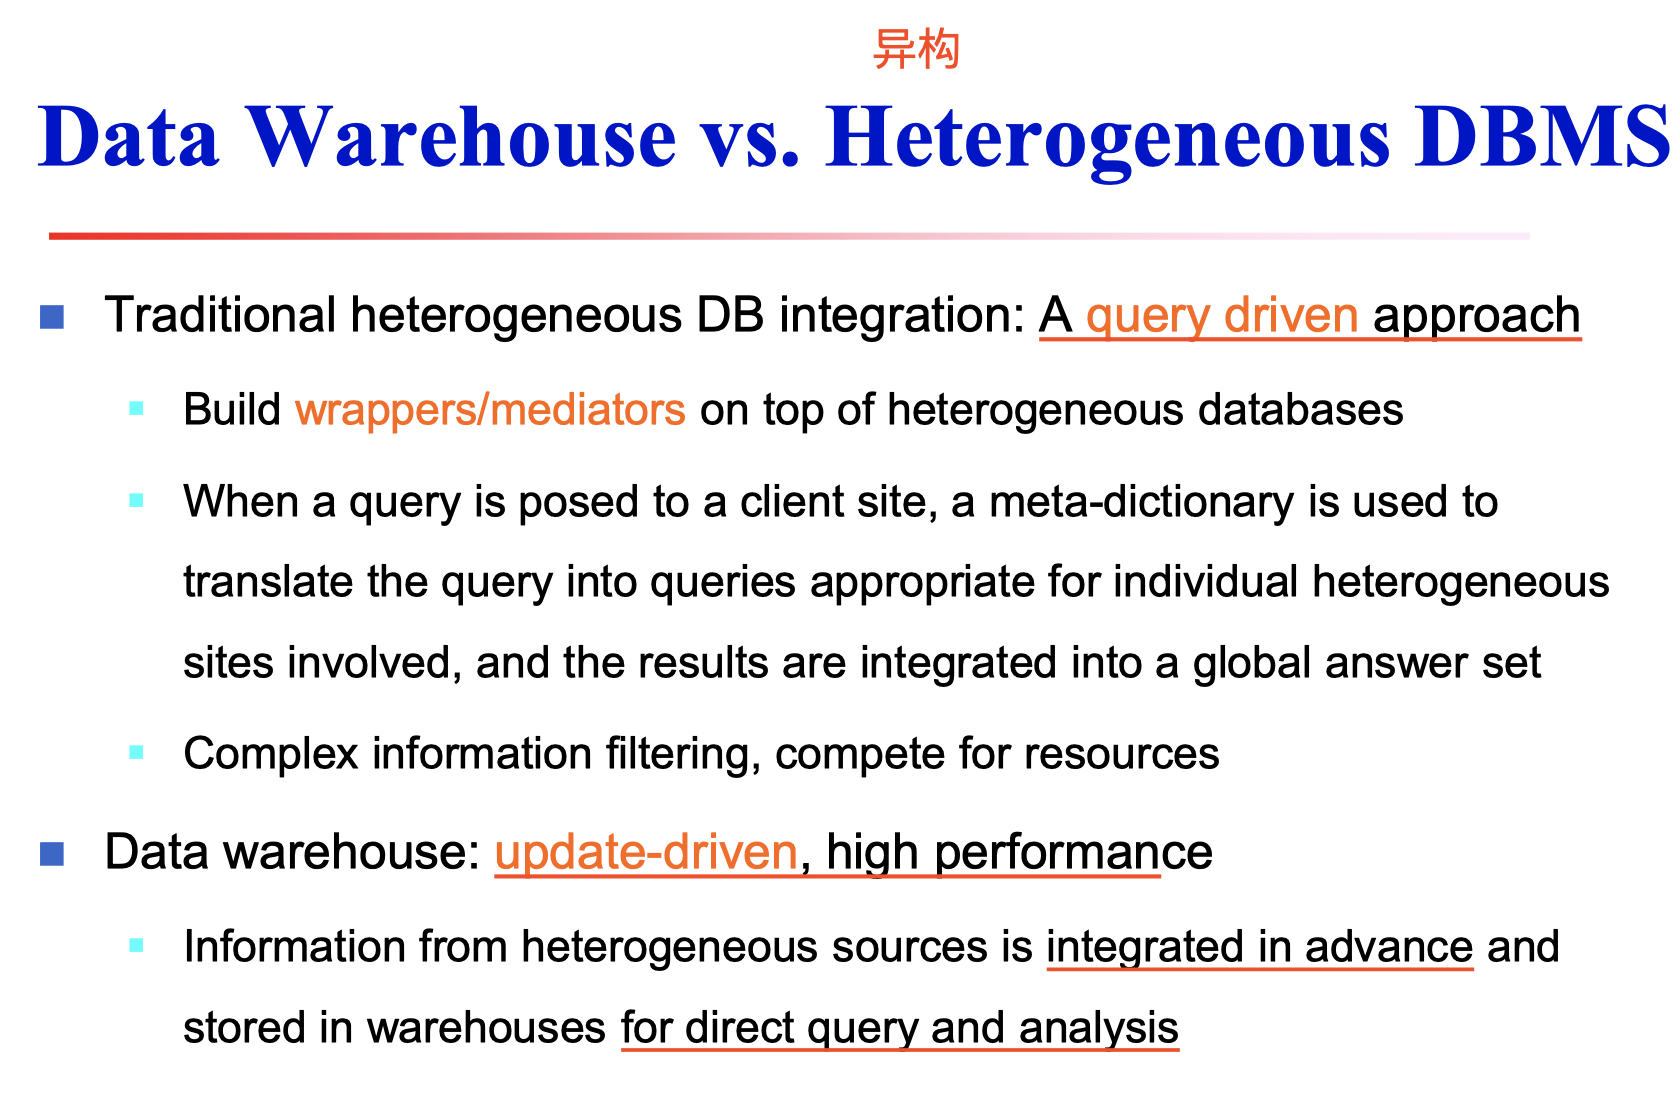 DataWareHouse vs DBMS